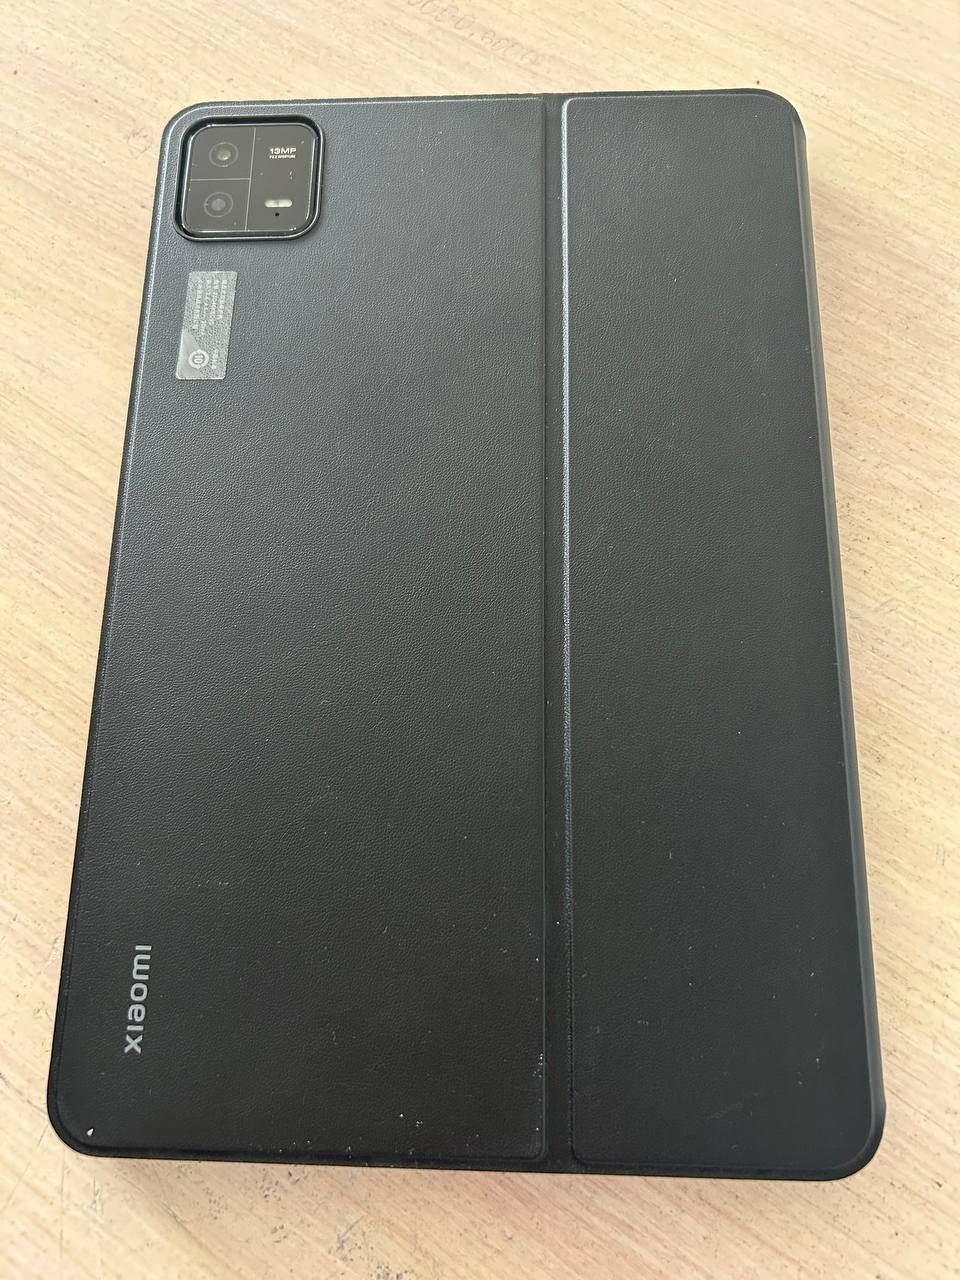 Продам планшет Xiaomi